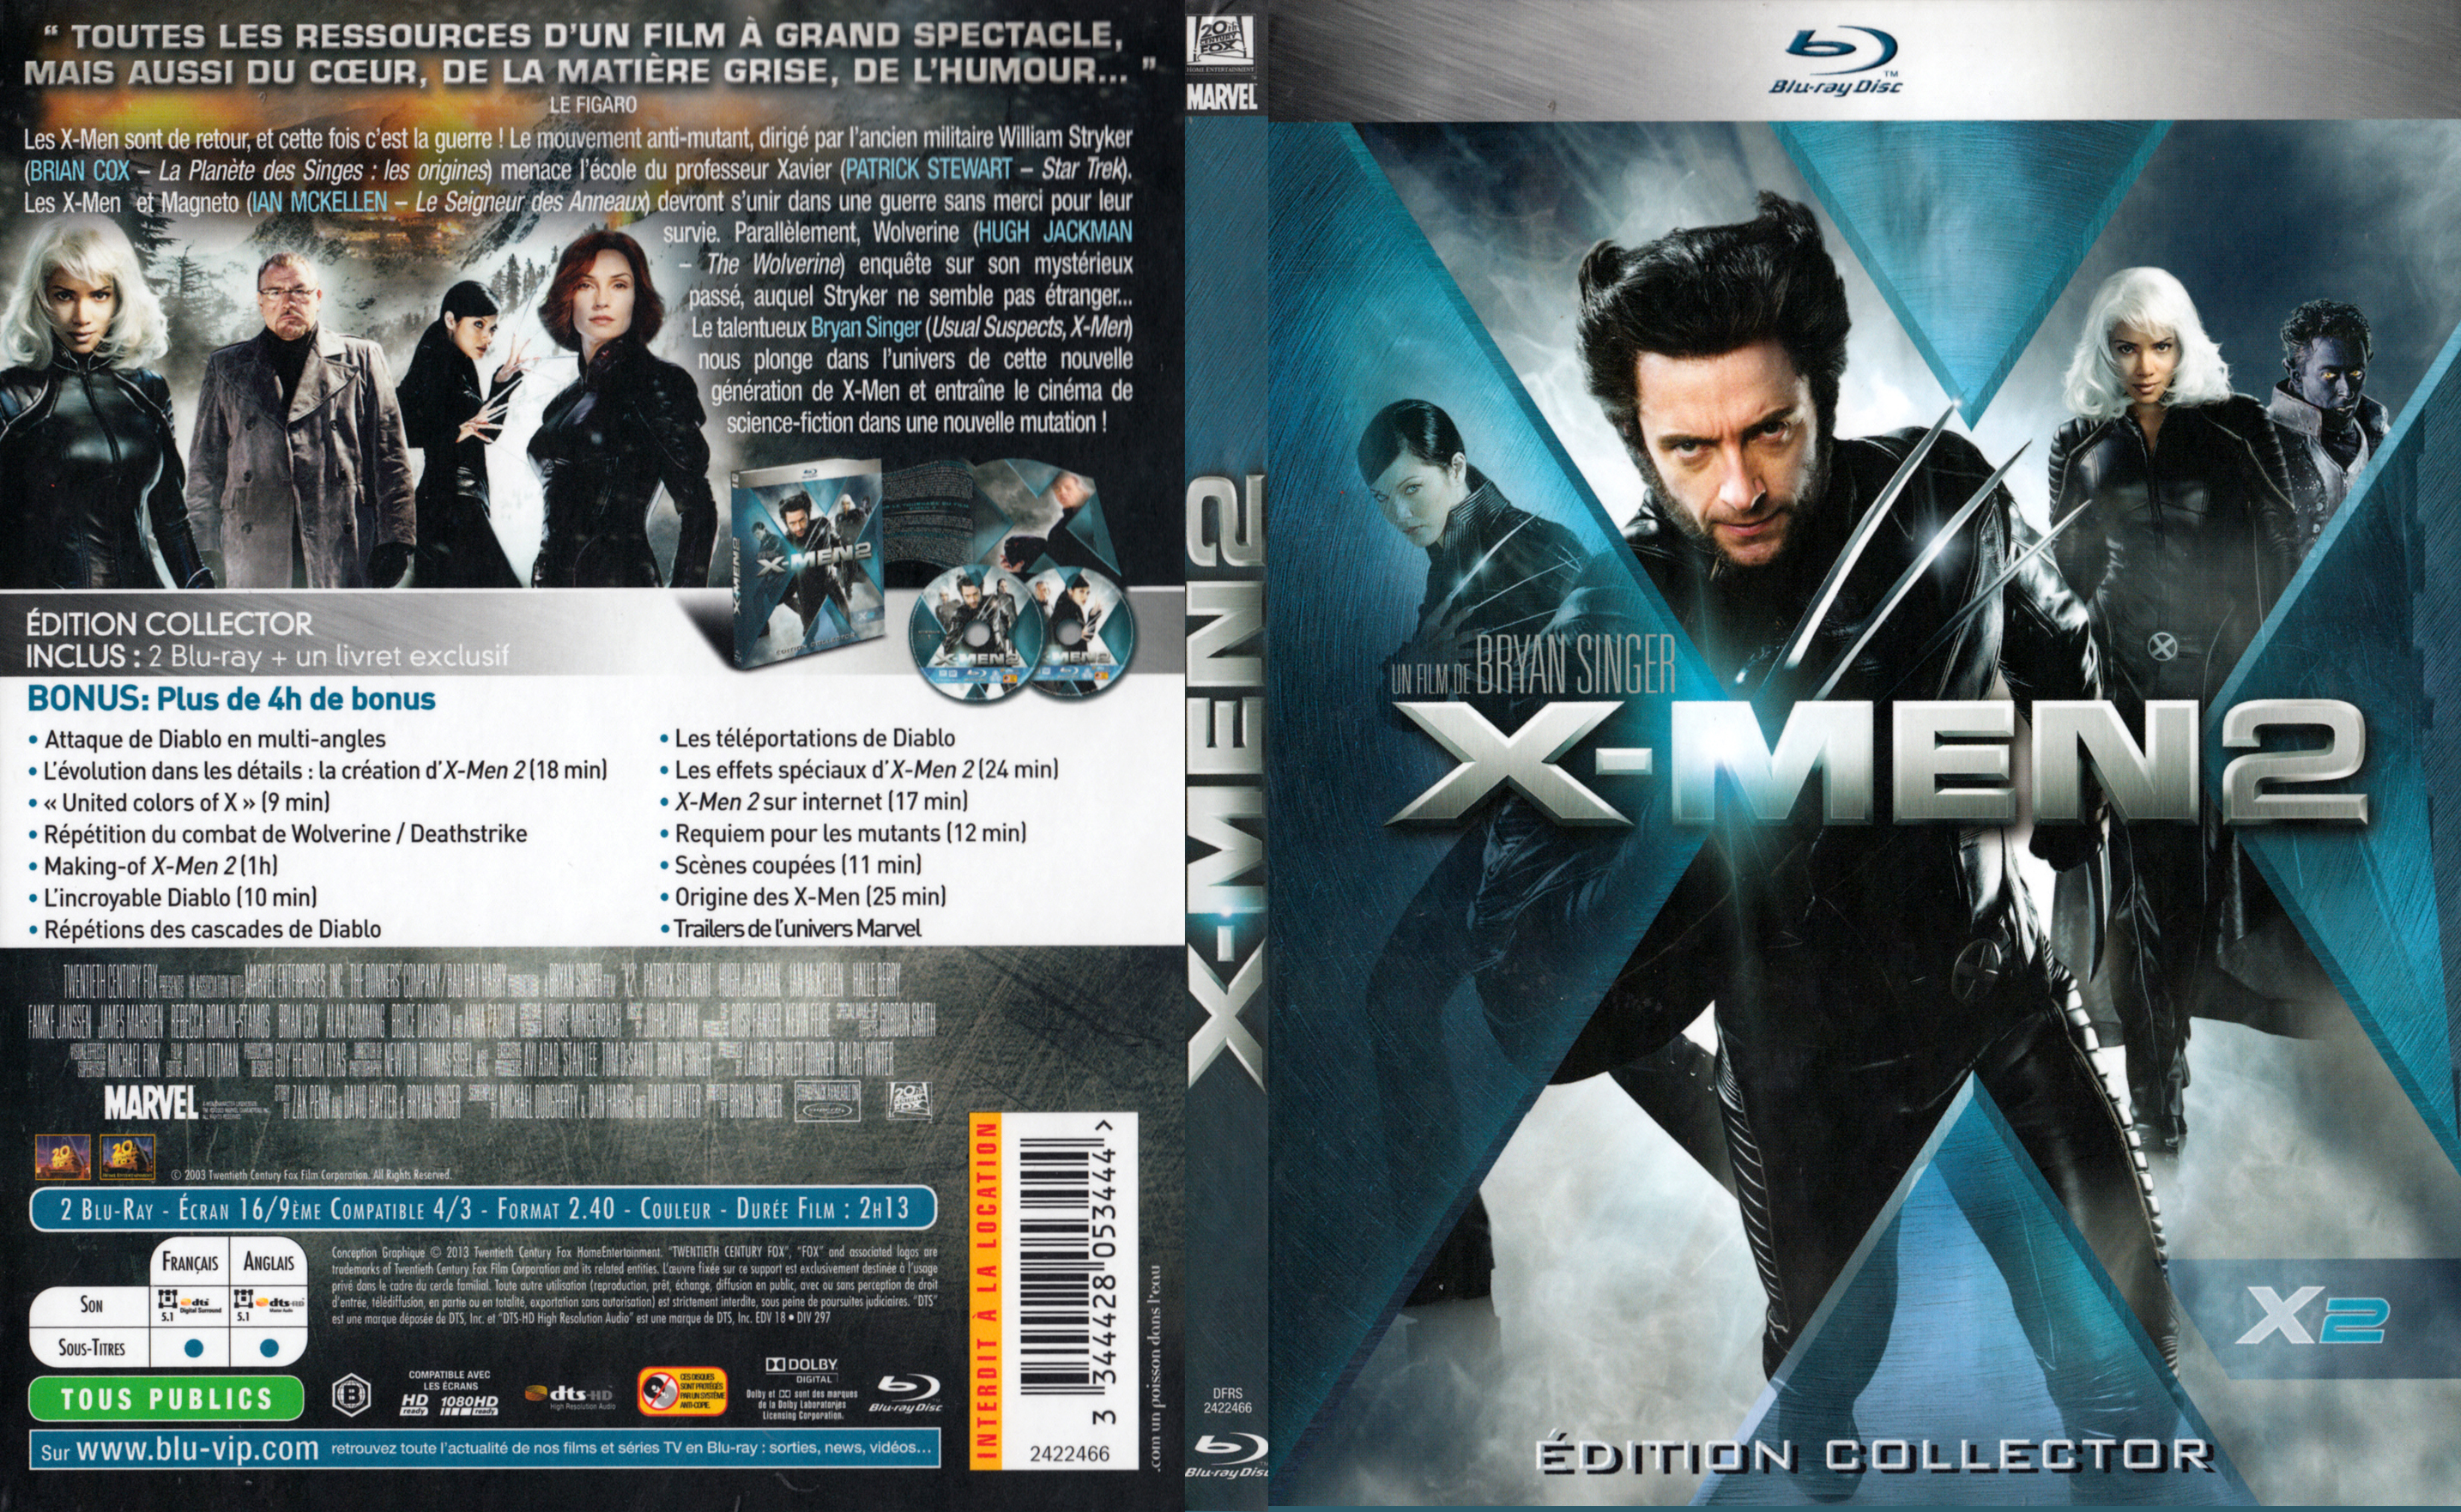 Jaquette DVD X-men 2 (BLU-RAY) v2